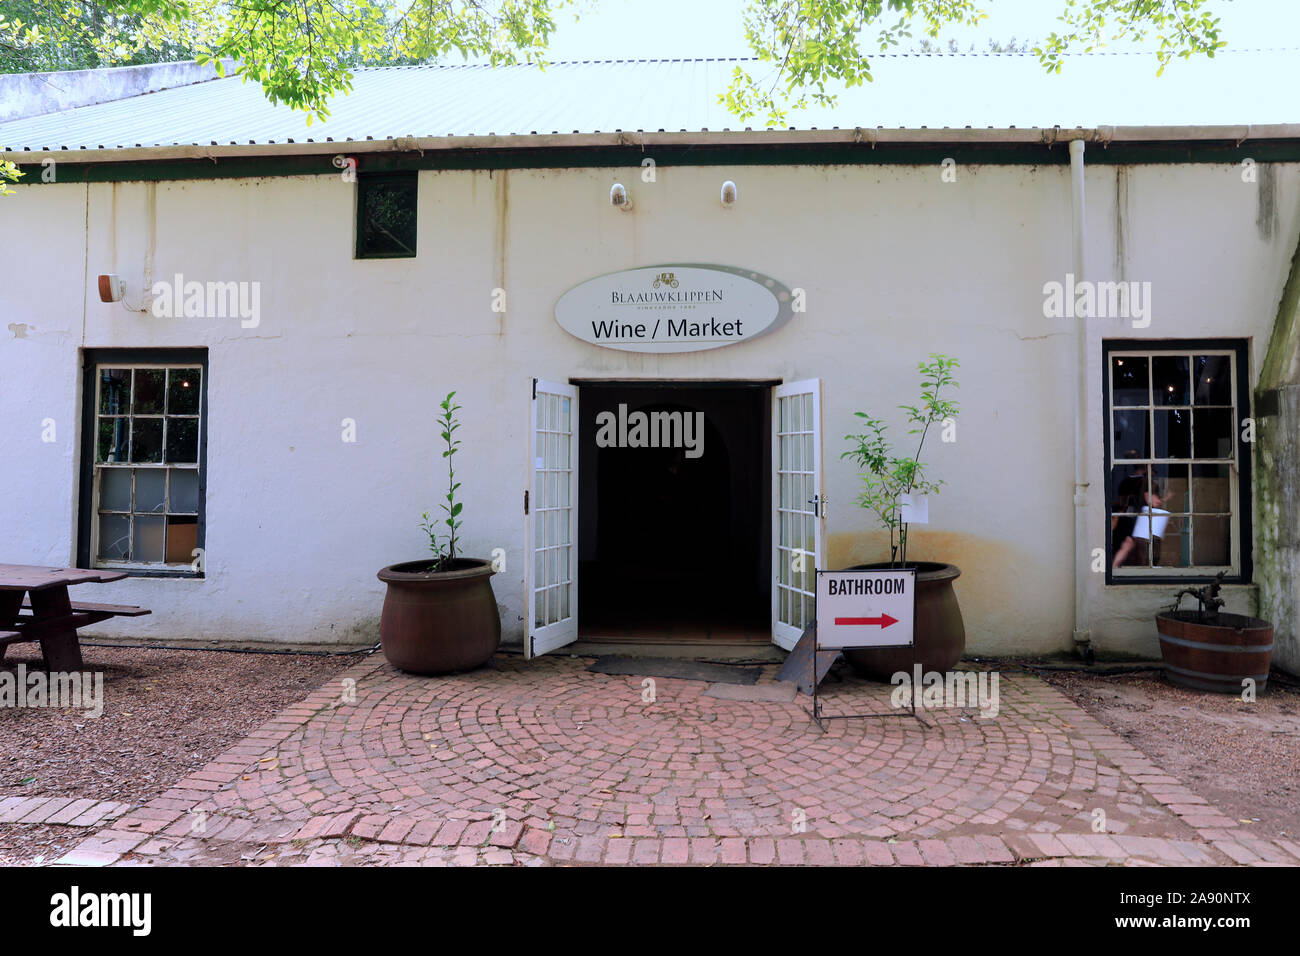 Au marché du vin vignobles Blaauwklippen à Stellenbosch, Cape Winelands, Afrique du Sud. Banque D'Images